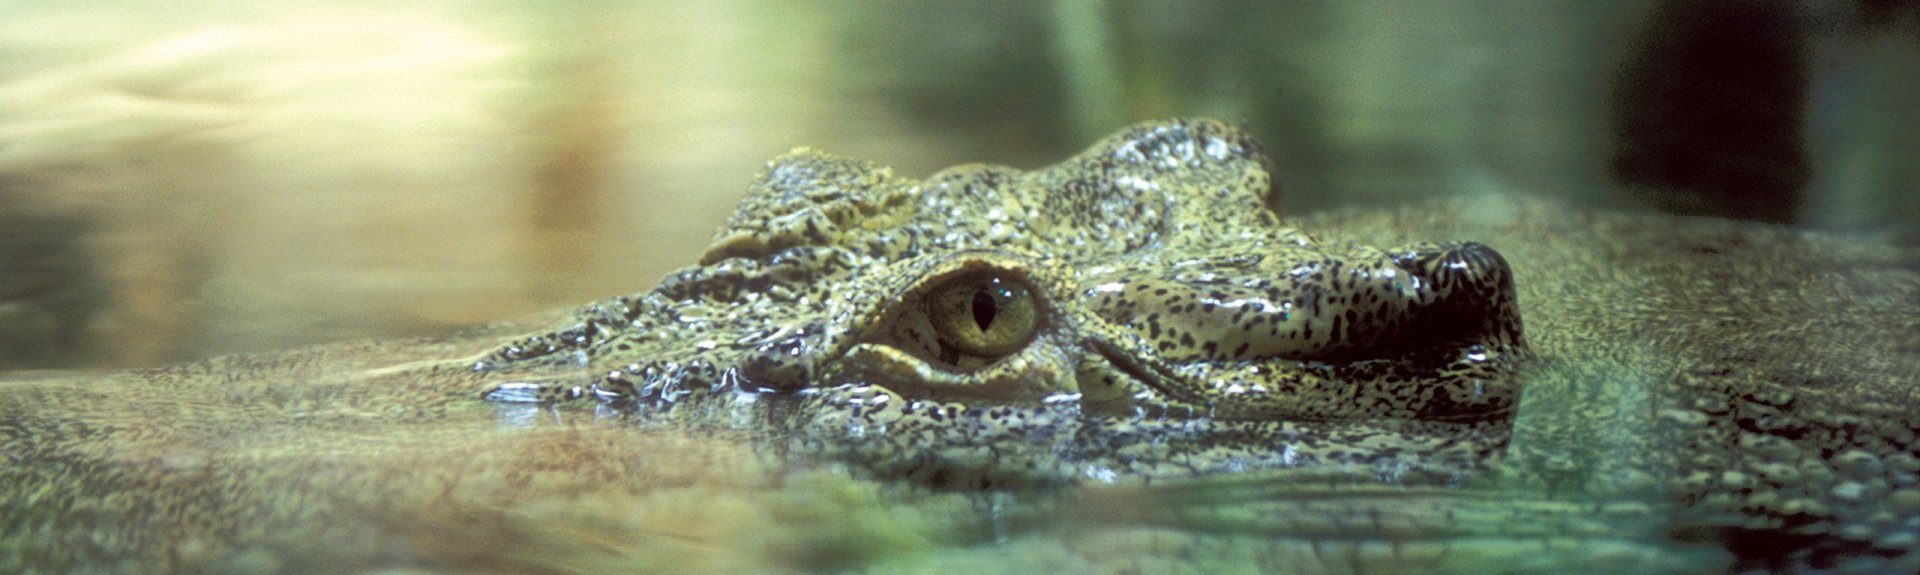 Croc spotting | Kakadu National Park